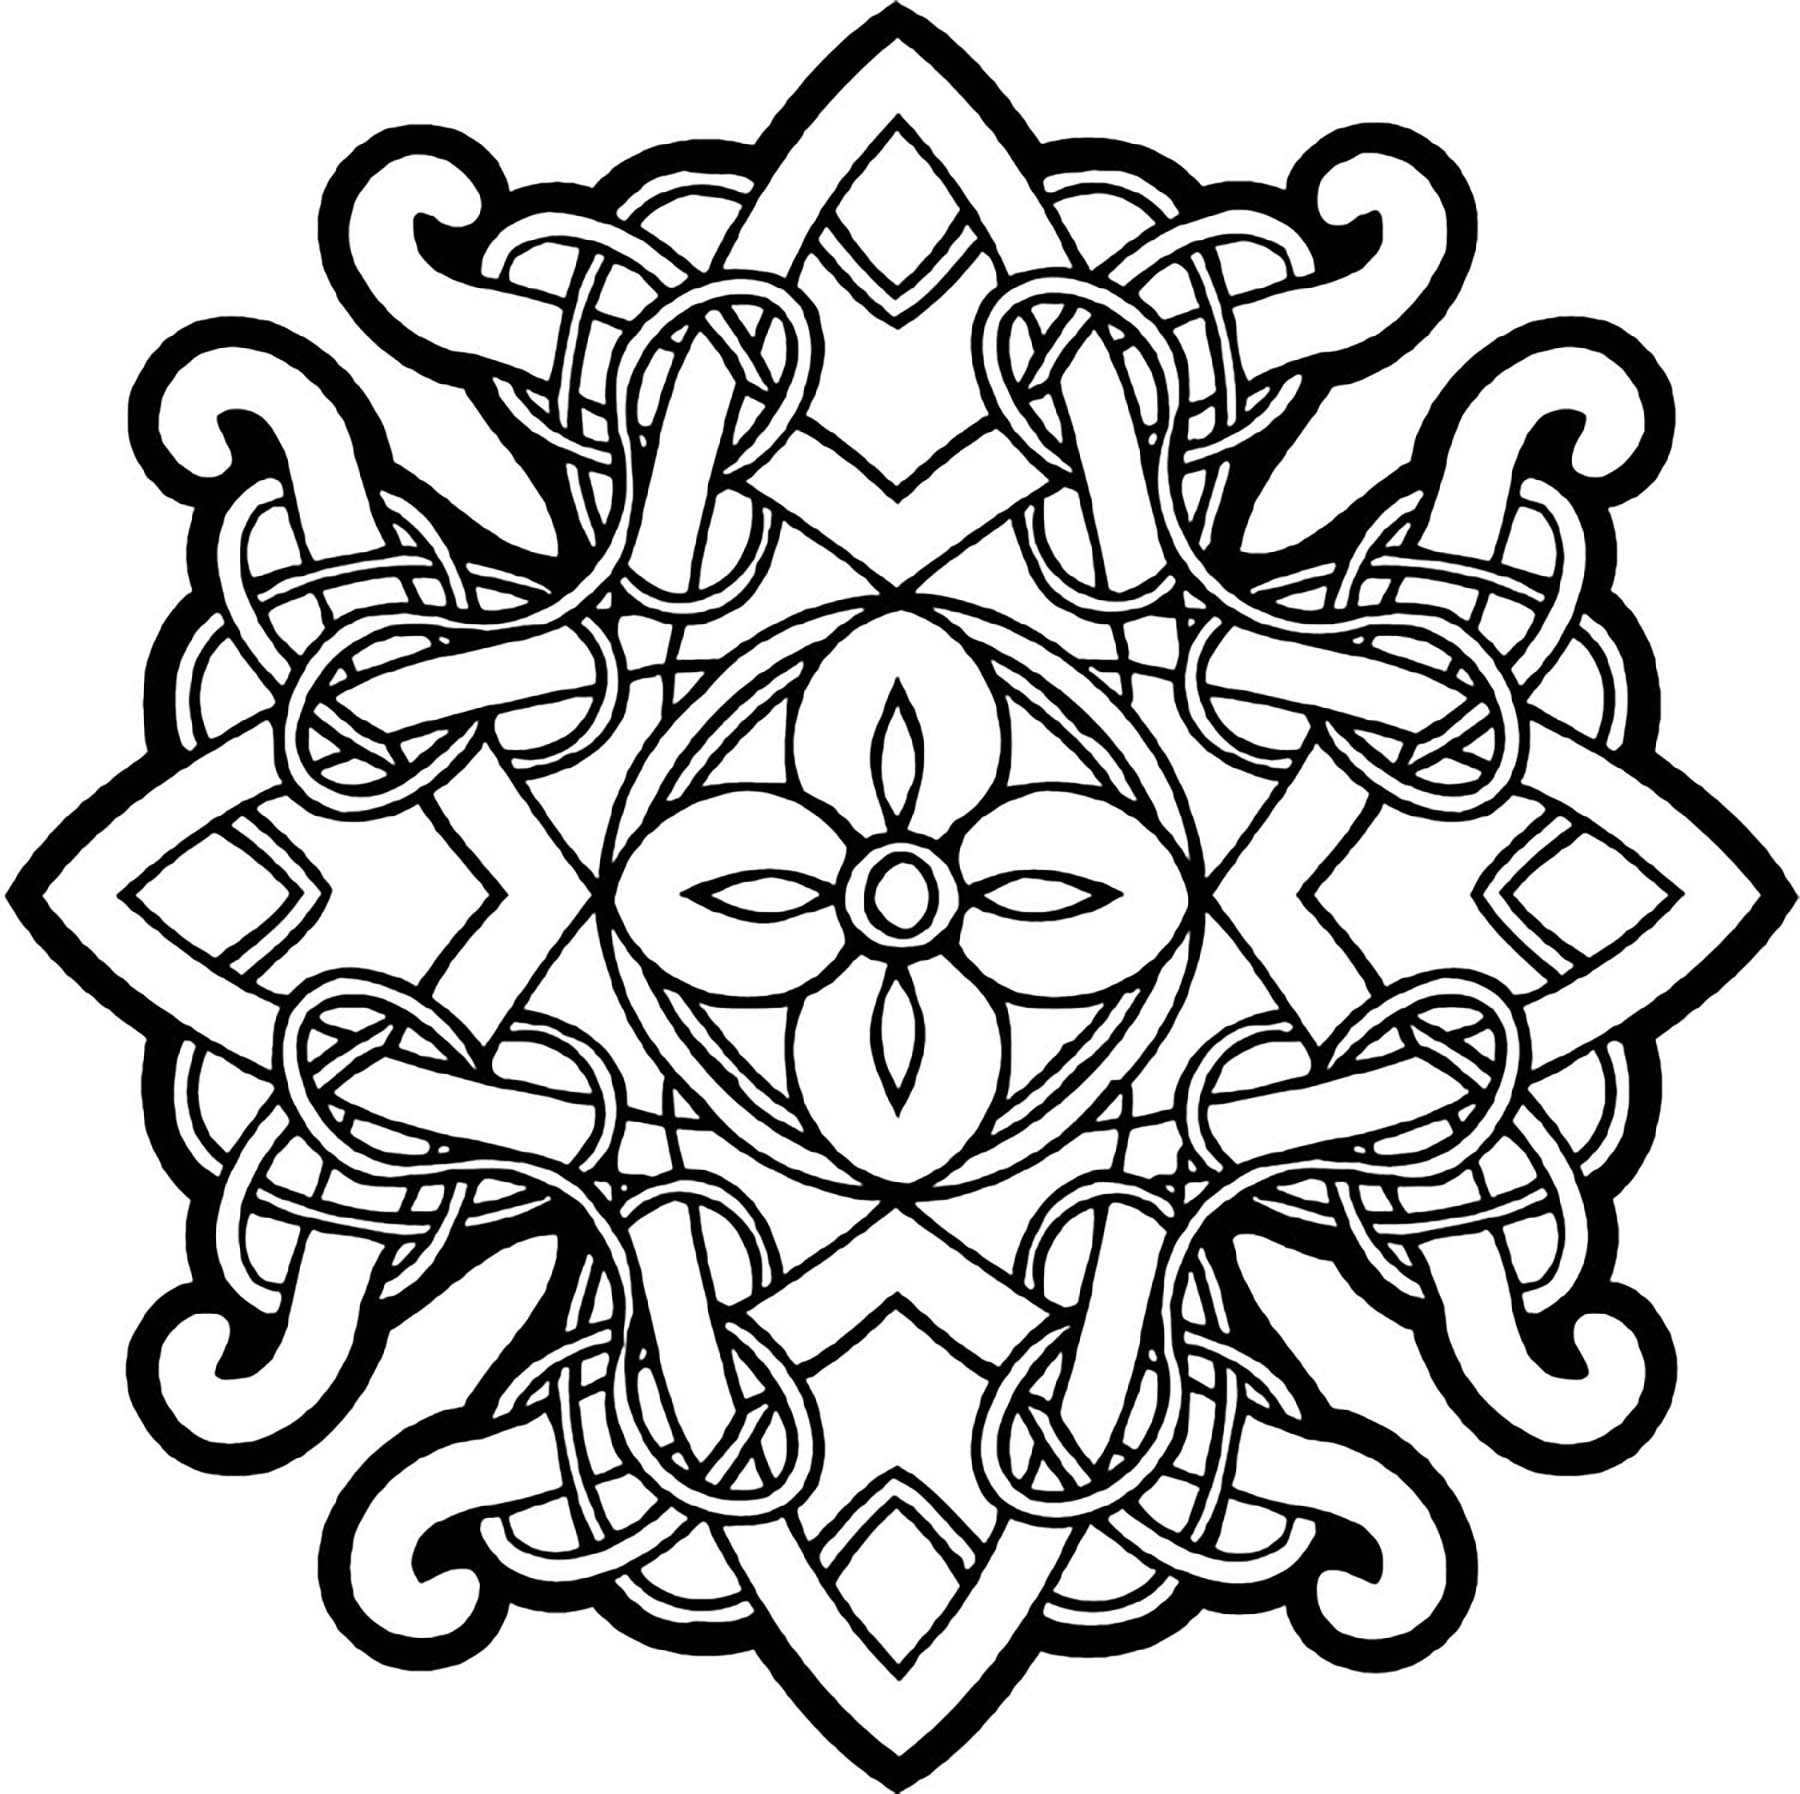 Uma bonita mandala celtaLinhas entrelaçadas típicas da arte celta, traços grossos e simetria perfeita. Aqui está uma Mandala para colorir que o levará numa viagem às belas planícies da Irlanda ...